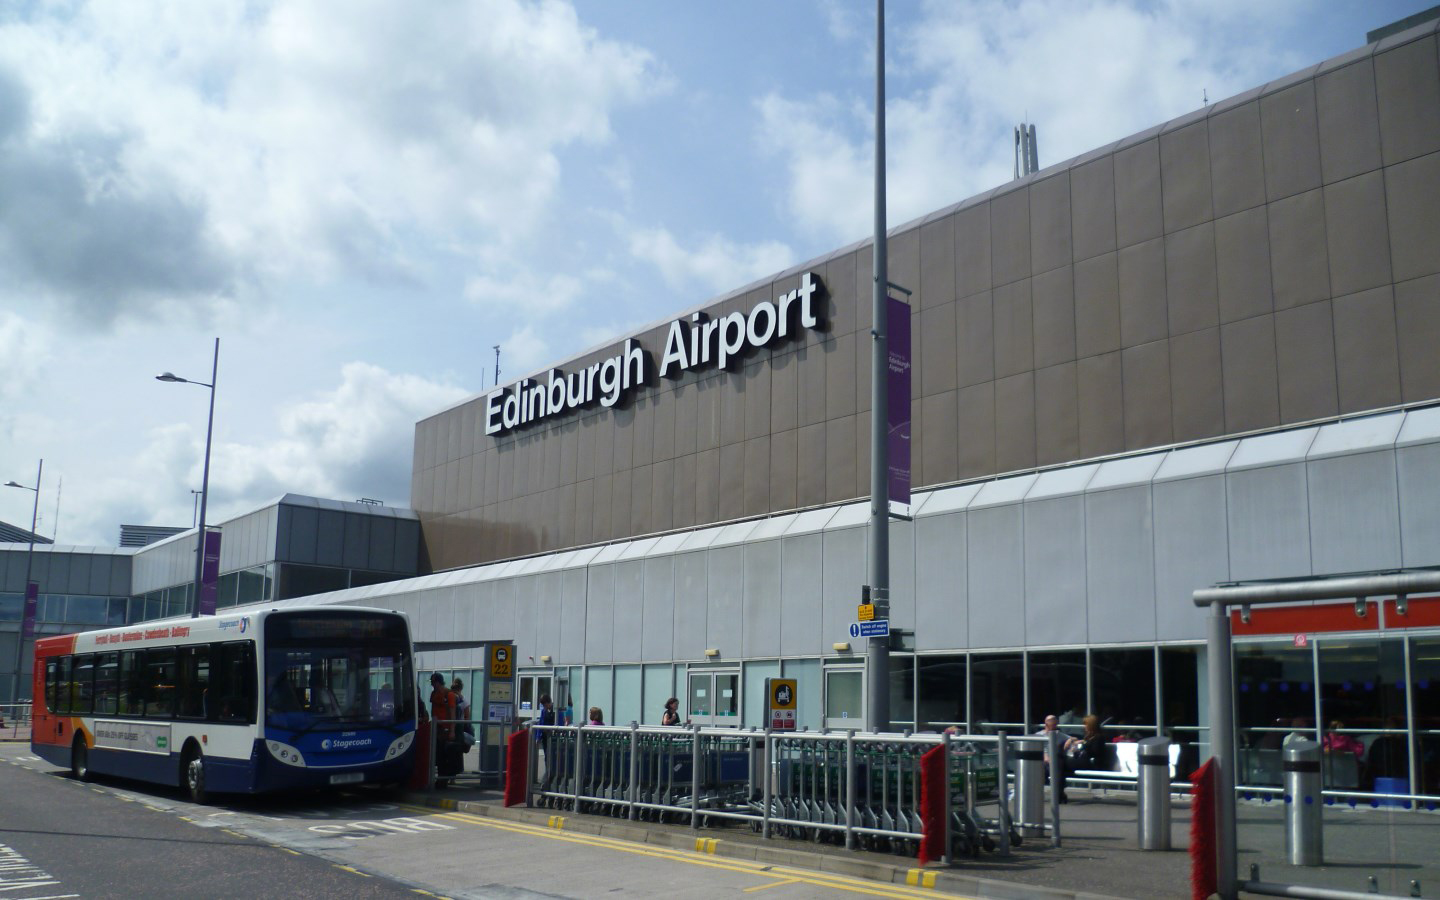 ParkCloud's Scot the Parking Solution for Edinburgh Airport Passengers